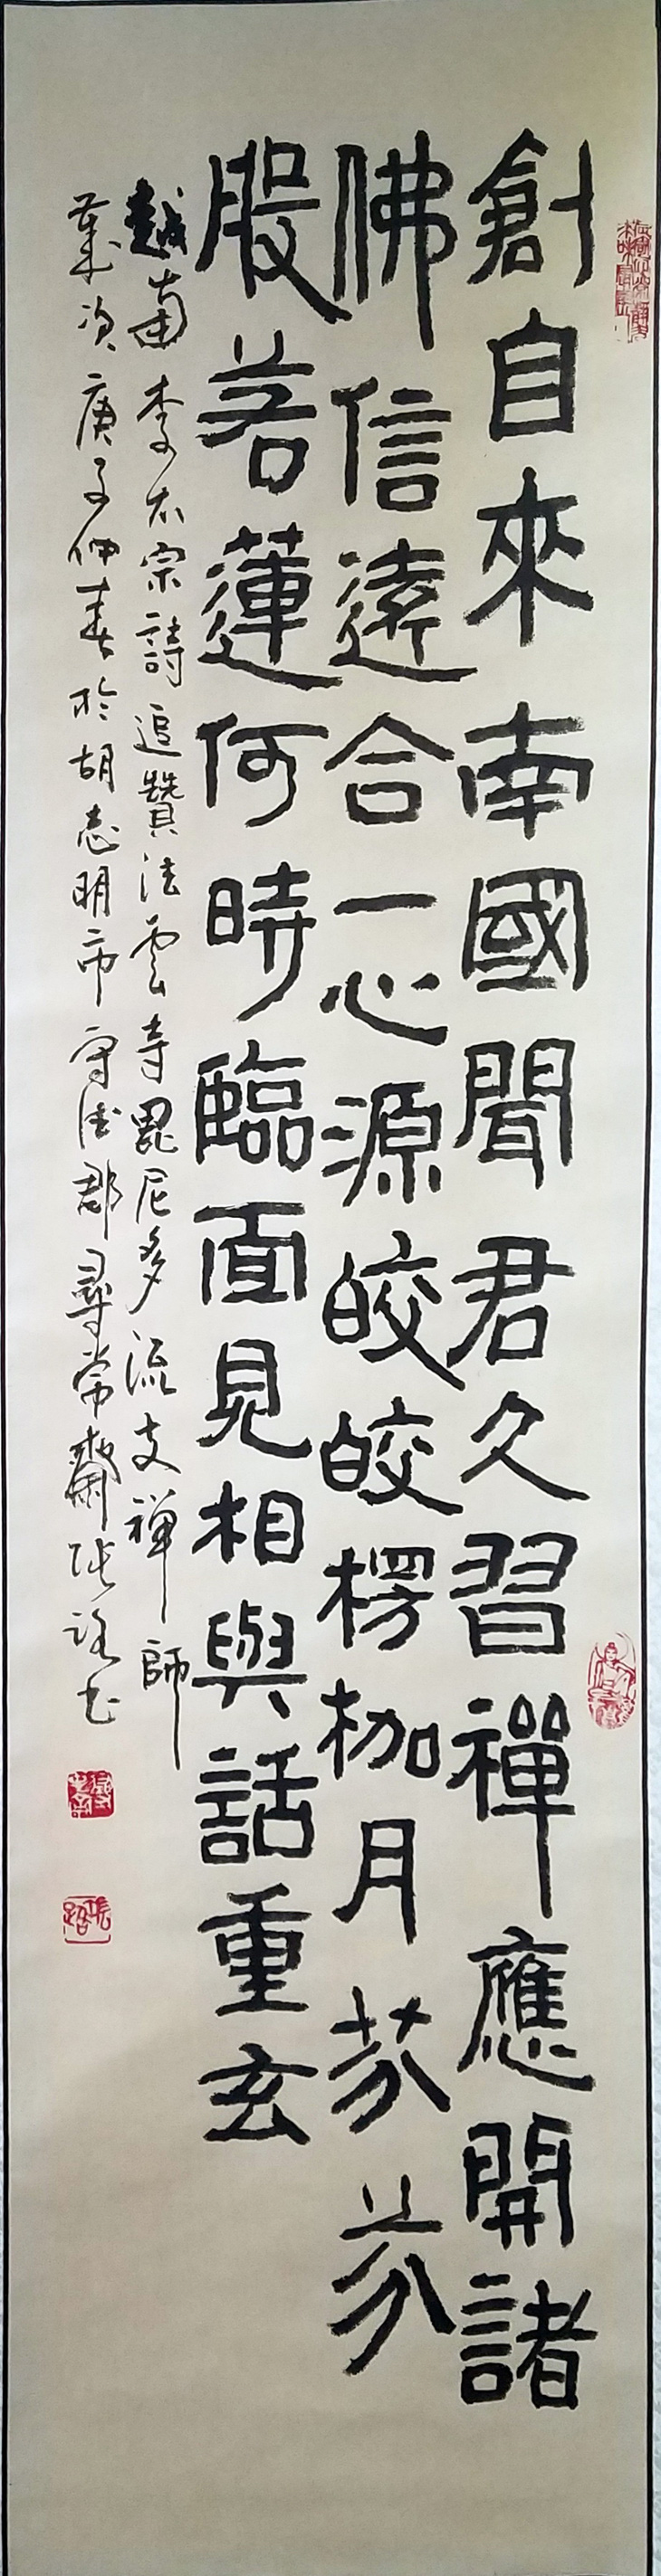 Xem triển lãm thư pháp của Trương Lộ gặp thơ Lê Quý Đôn, Bùi Giáng, Bảo Định Giang - Ảnh 3.